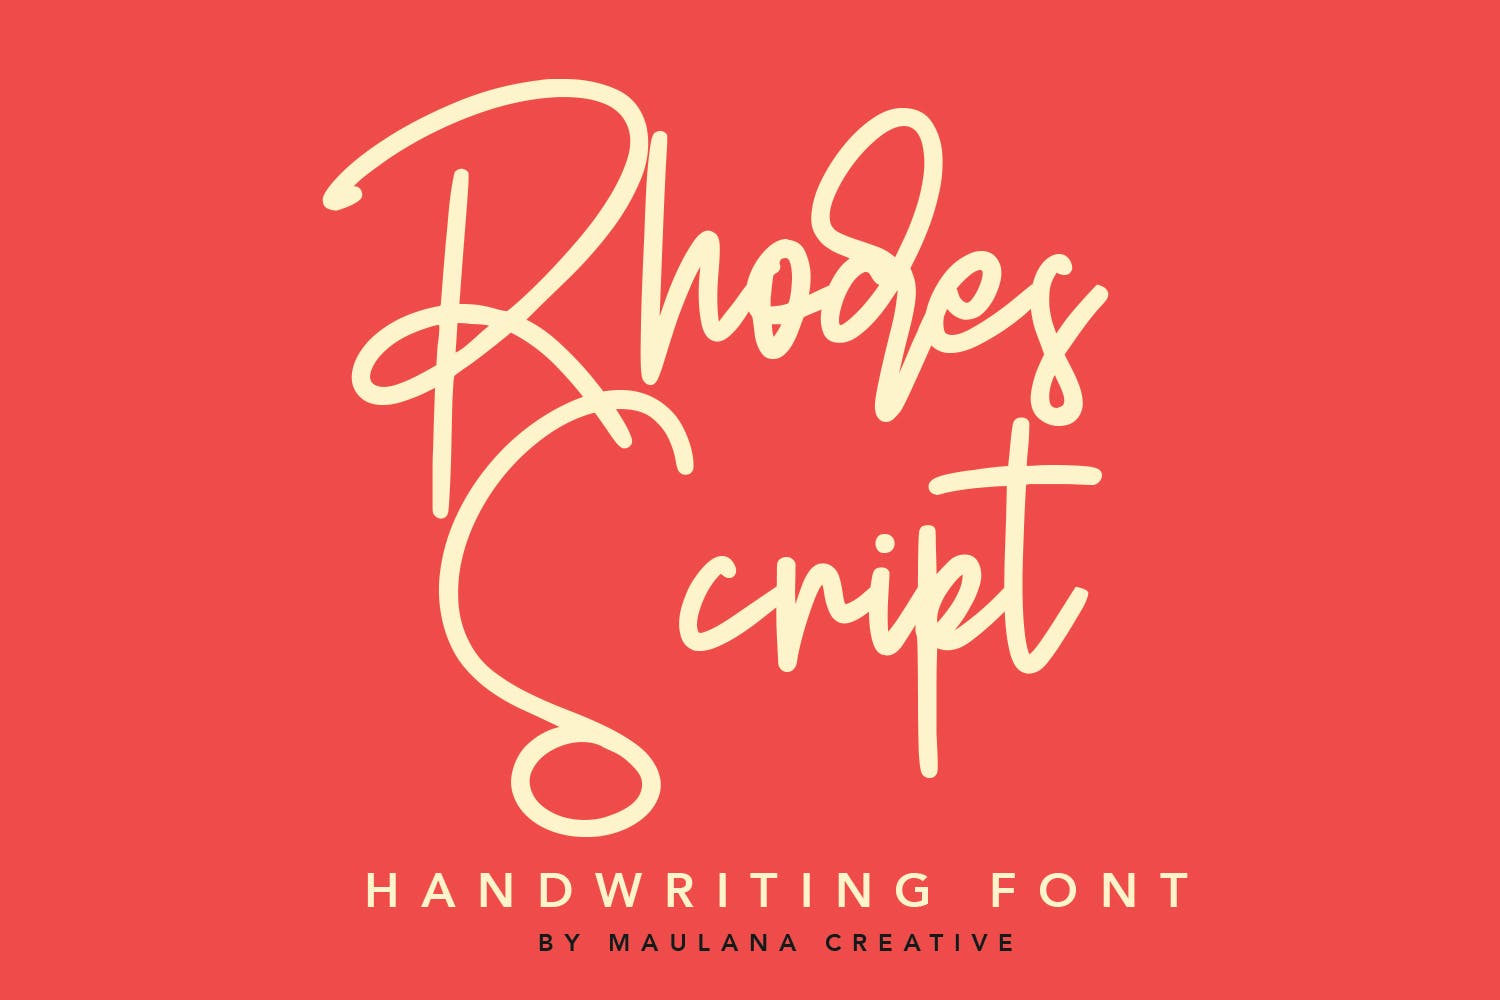 英文手写签名字体素材 Rhodes Modern Script Signature Font设计素材模板